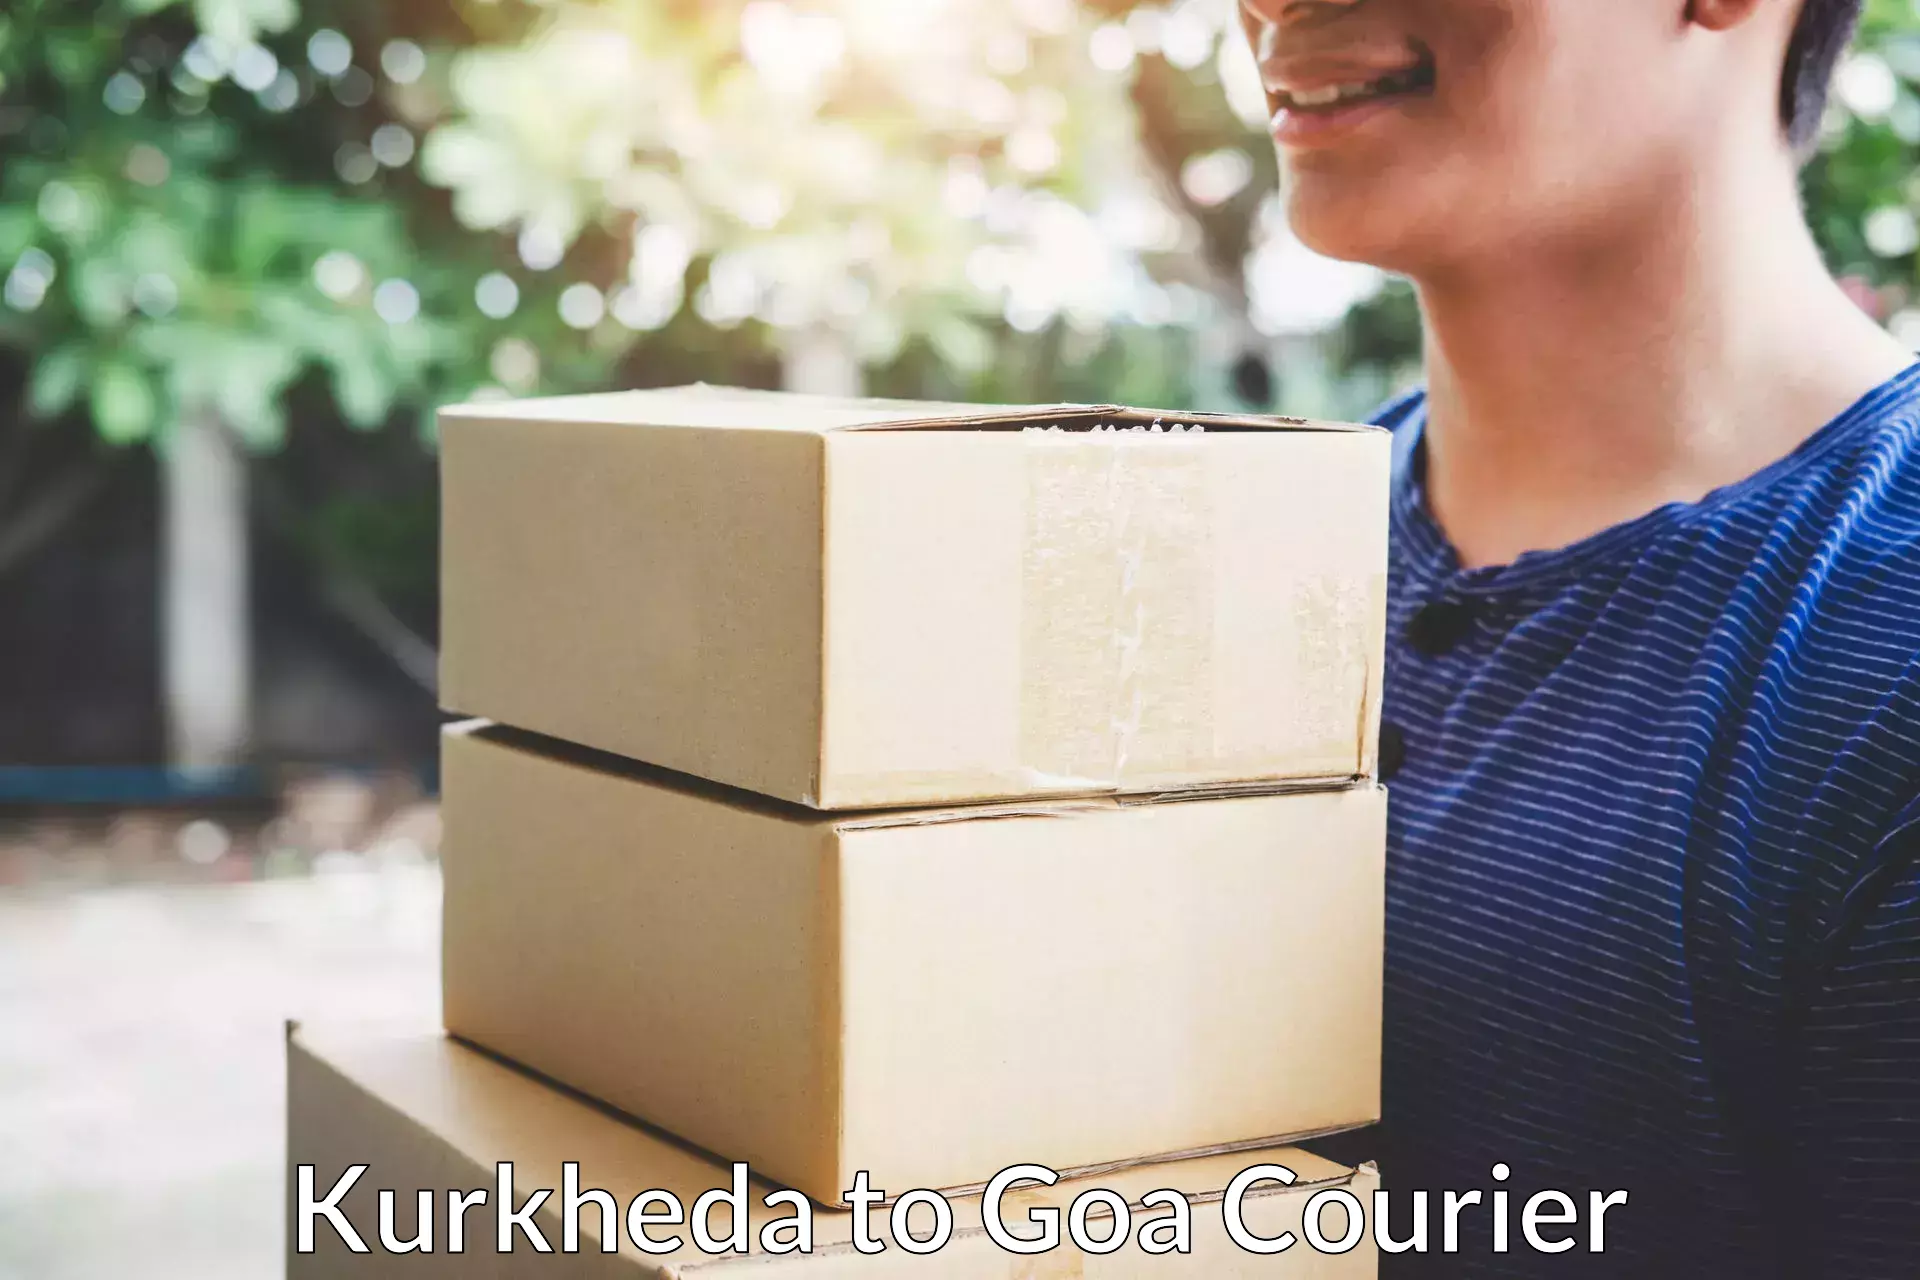 Quality moving company Kurkheda to South Goa